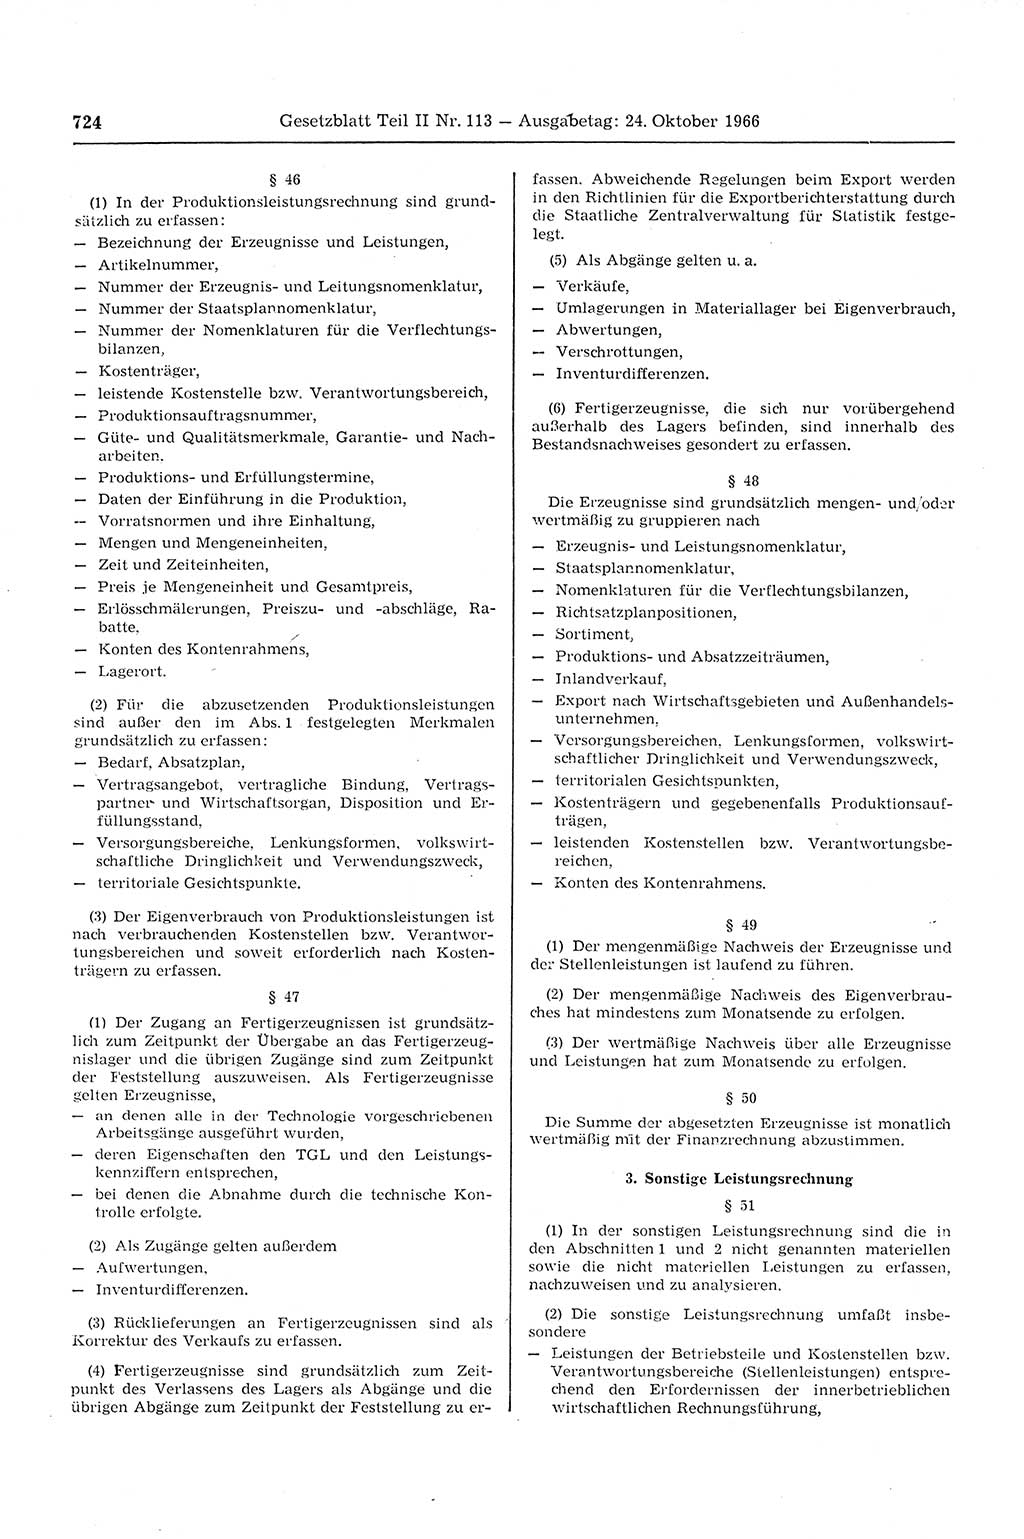 Gesetzblatt (GBl.) der Deutschen Demokratischen Republik (DDR) Teil ⅠⅠ 1966, Seite 724 (GBl. DDR ⅠⅠ 1966, S. 724)